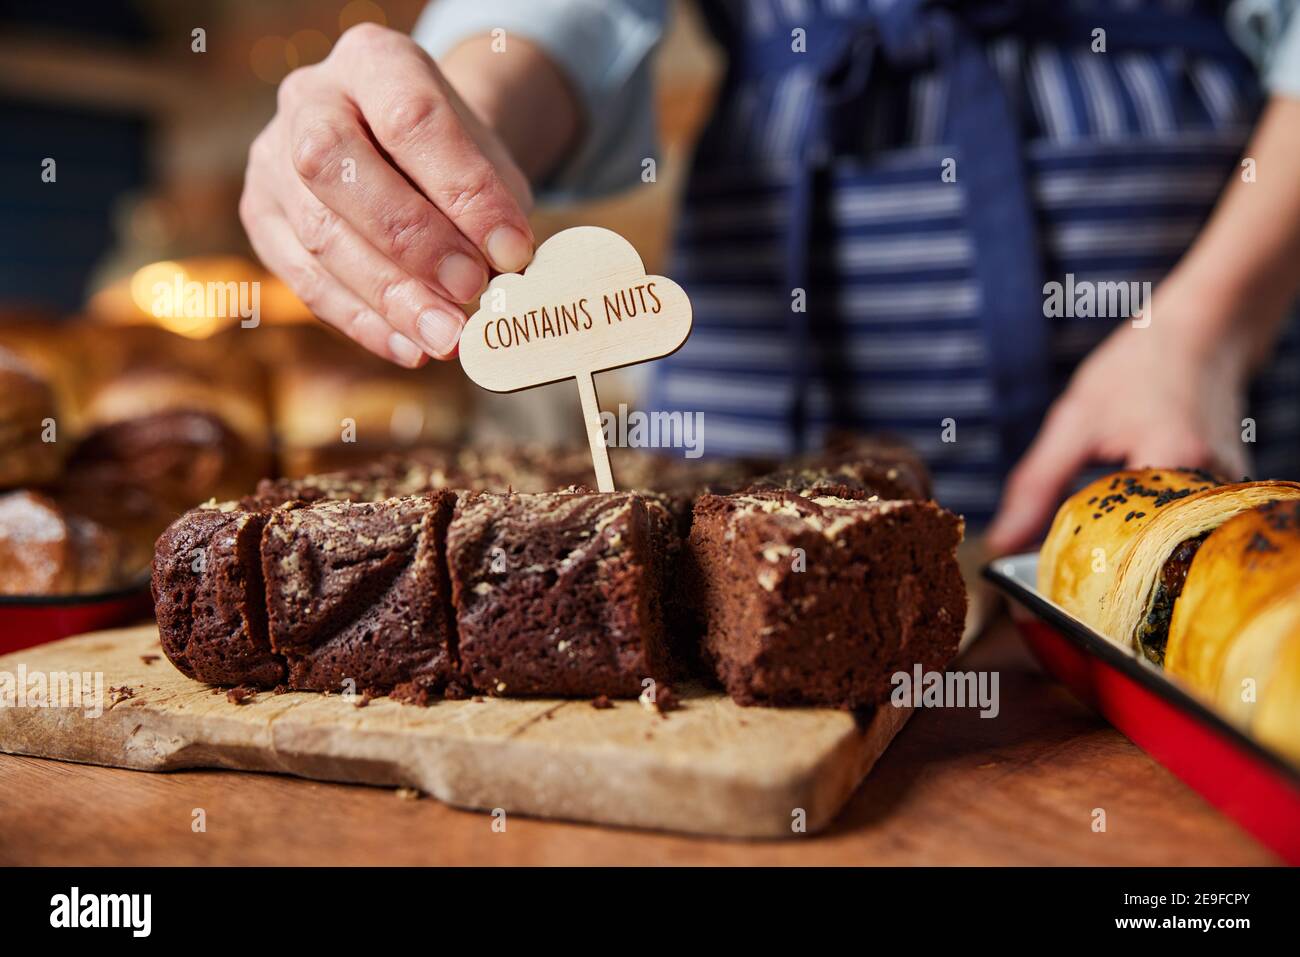 Sales Assistant in panetteria che mette contiene l'etichetta NUTS nella pila Di brownie appena sfornate Foto Stock